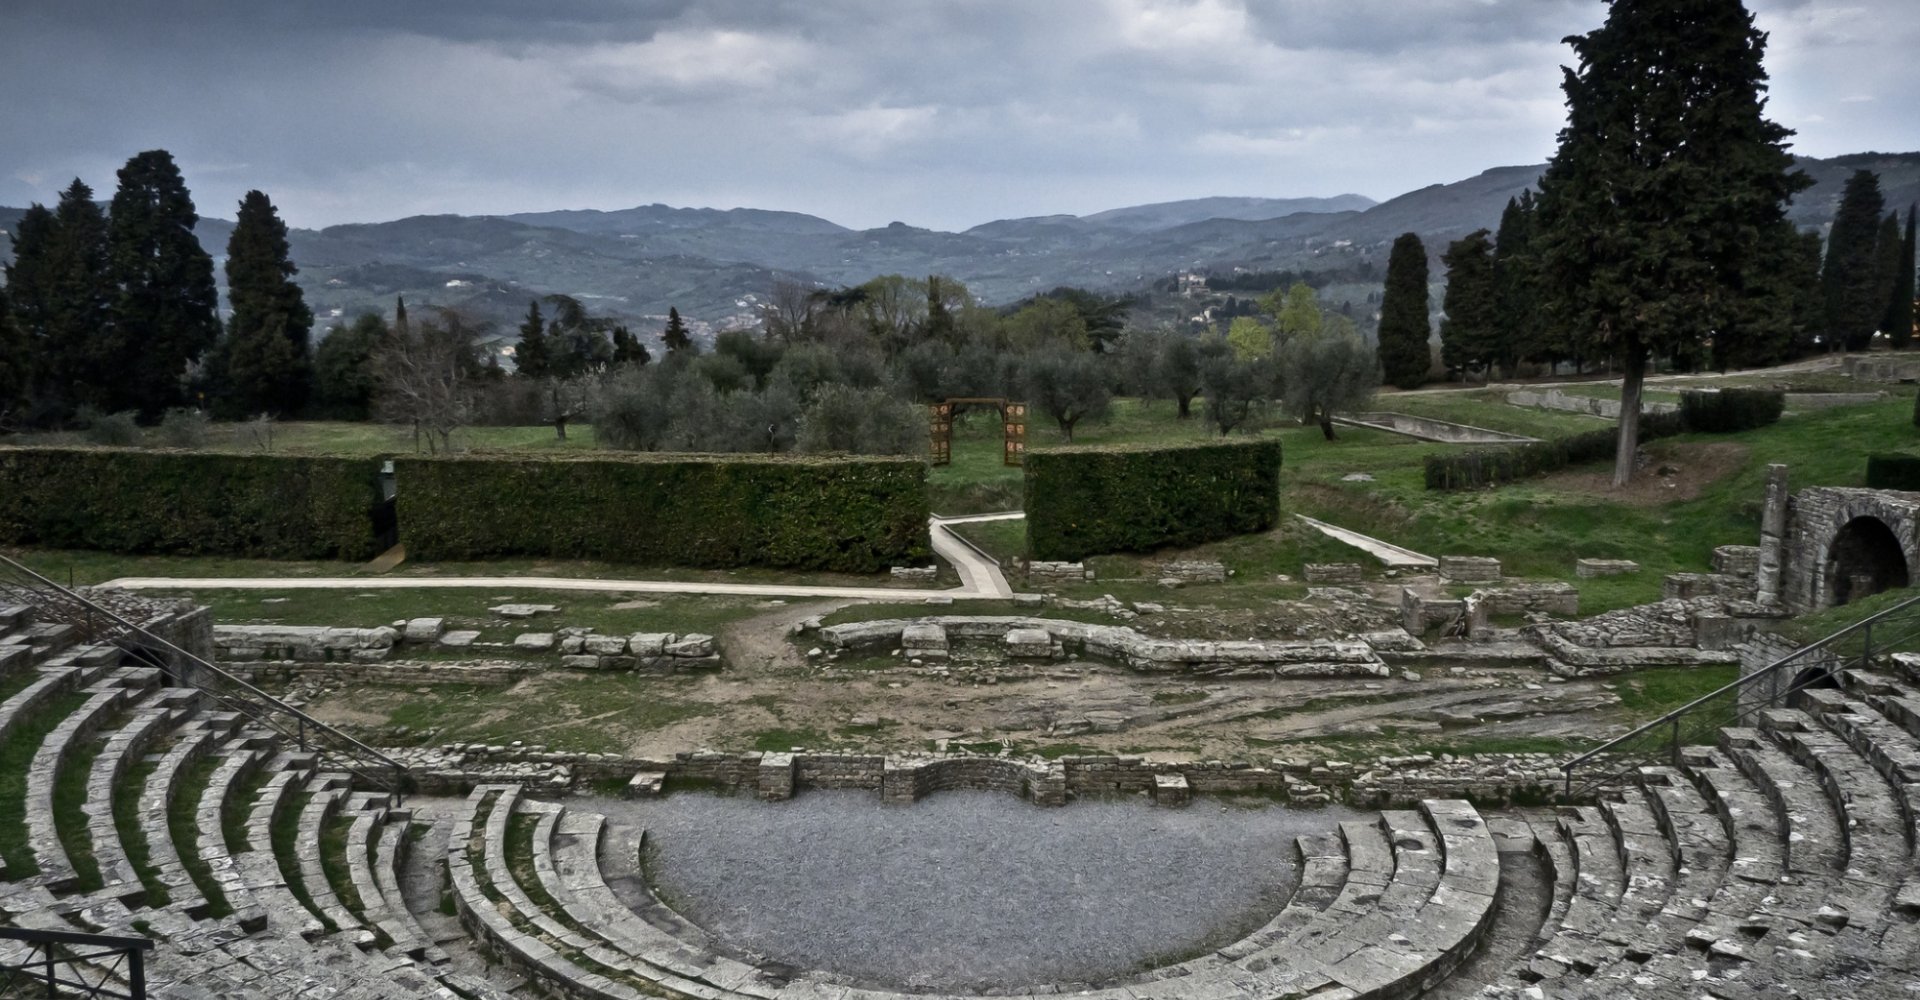 Amphitheater in Fiesole